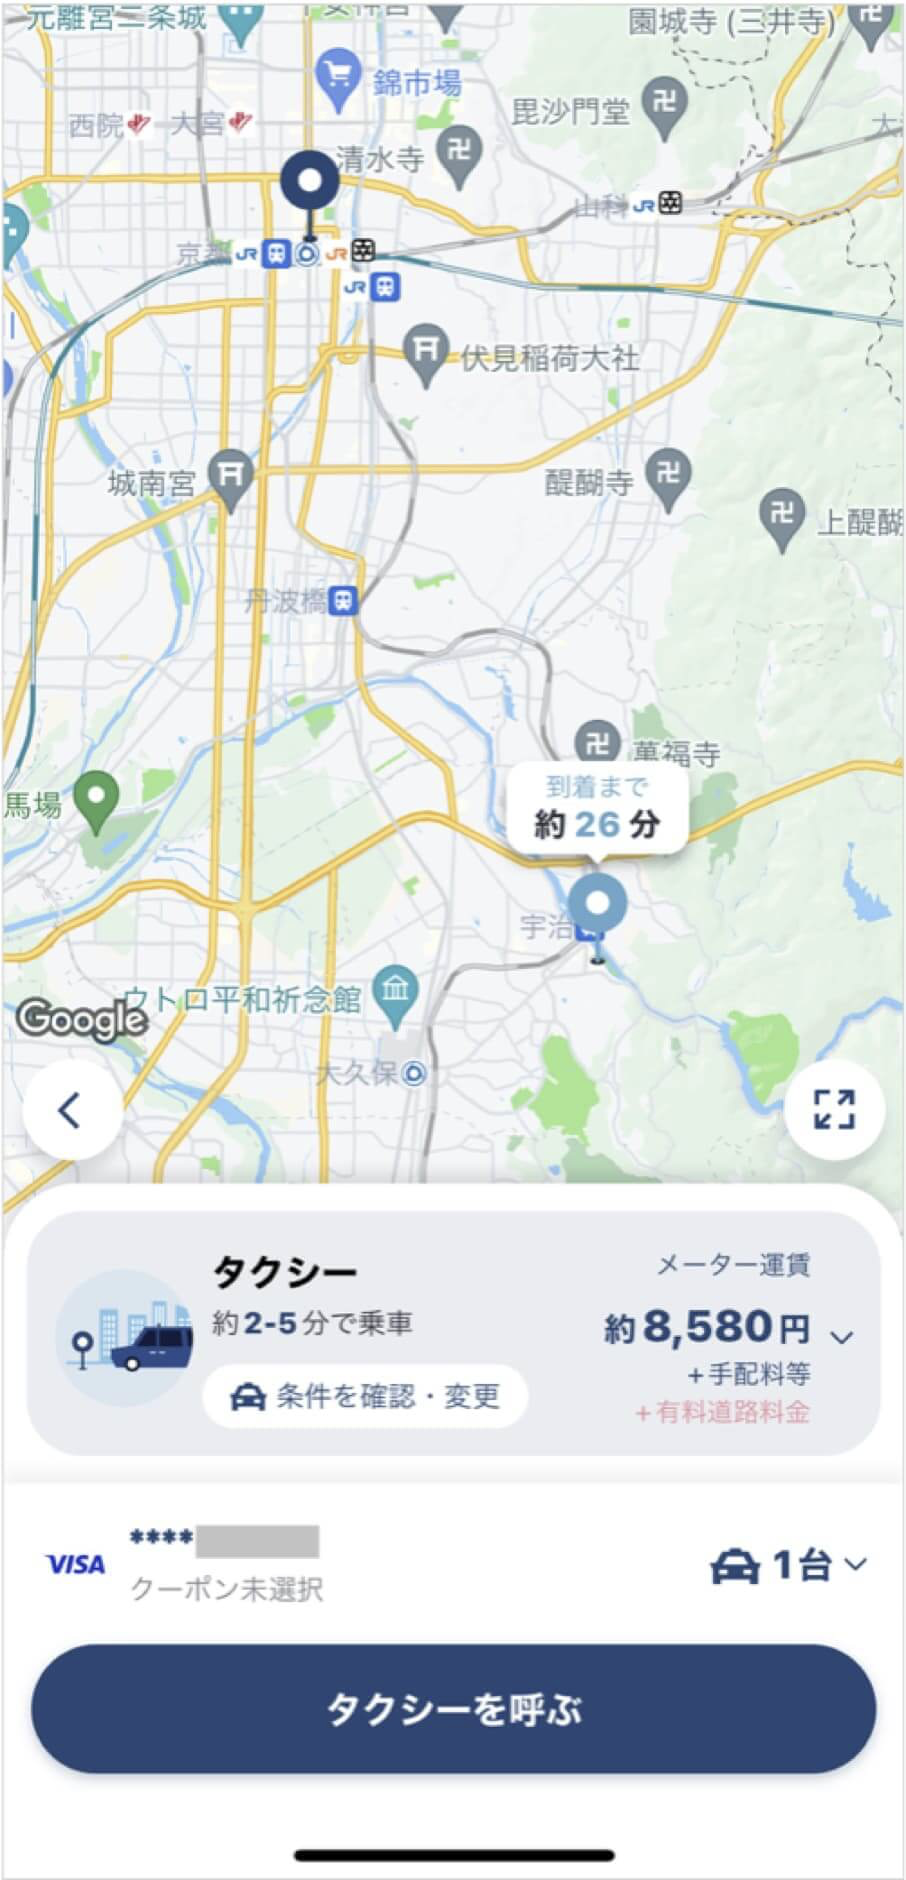 京都駅から平等院鳳凰堂までのタクシー料金・所要時間まとめ